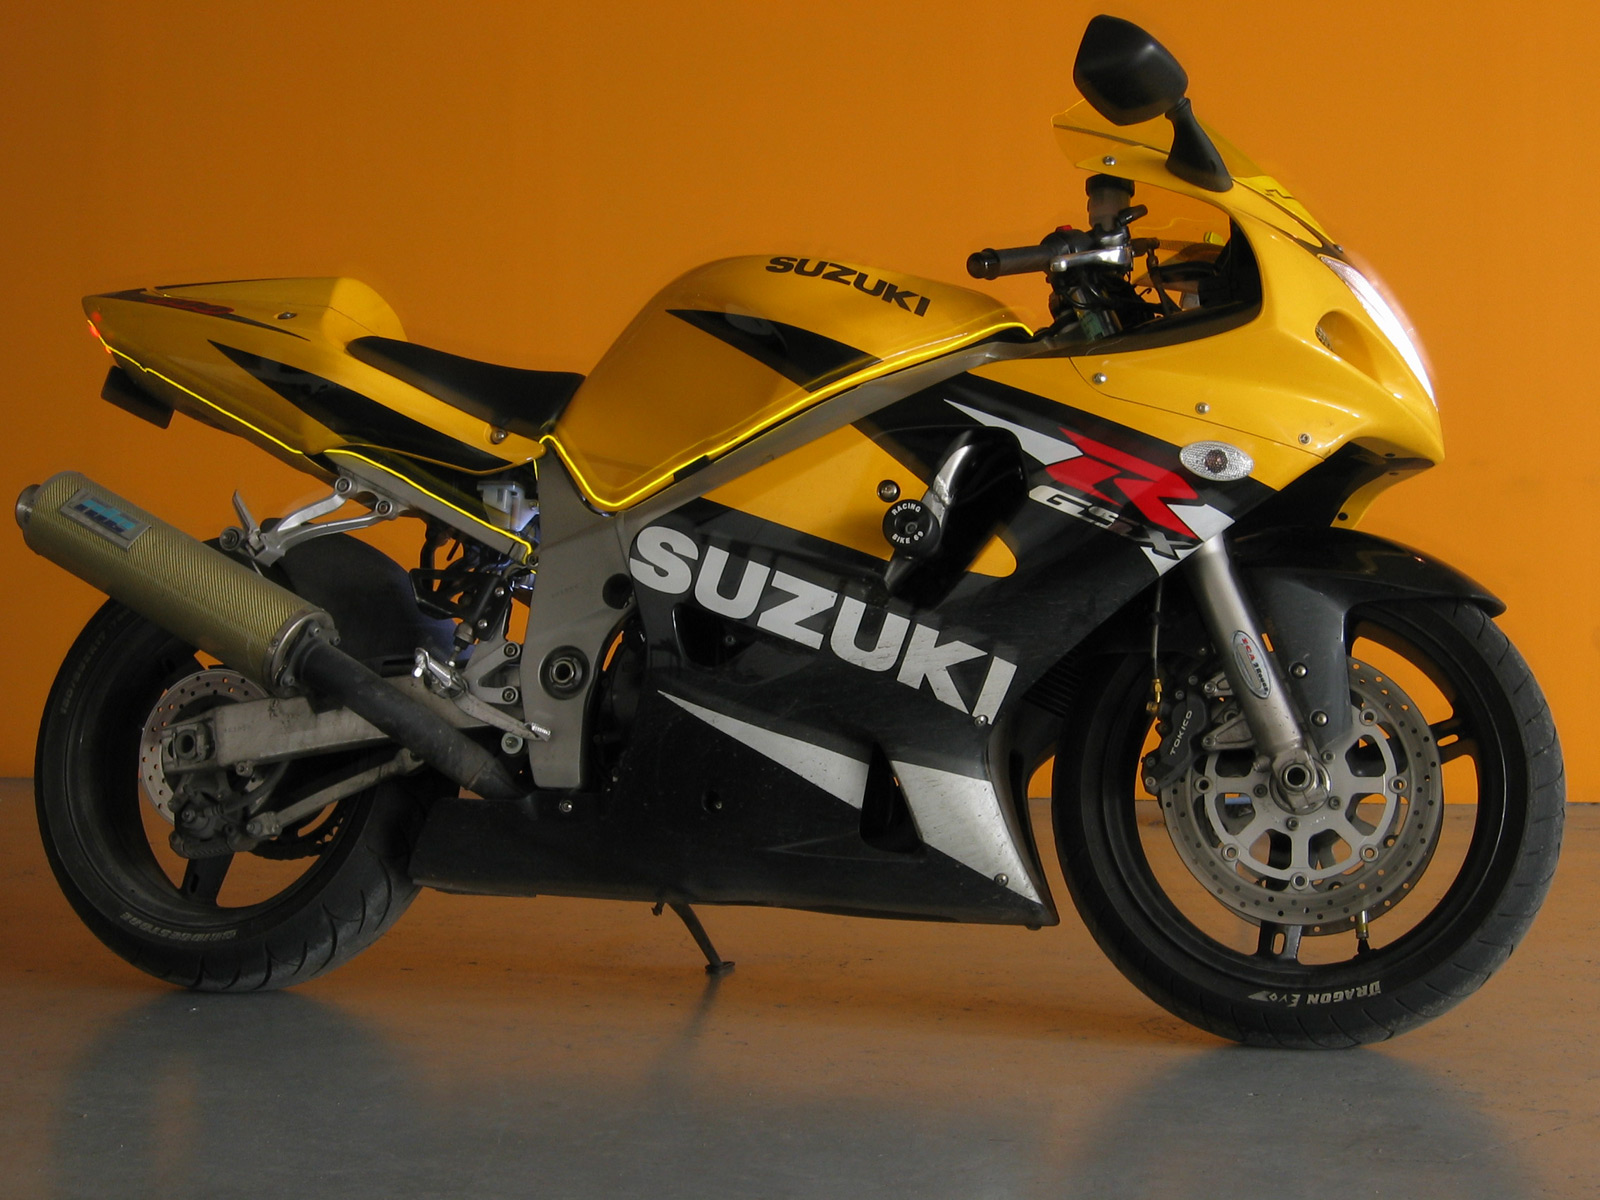 Suzuki_GSXR_600_1600x1200.jpg